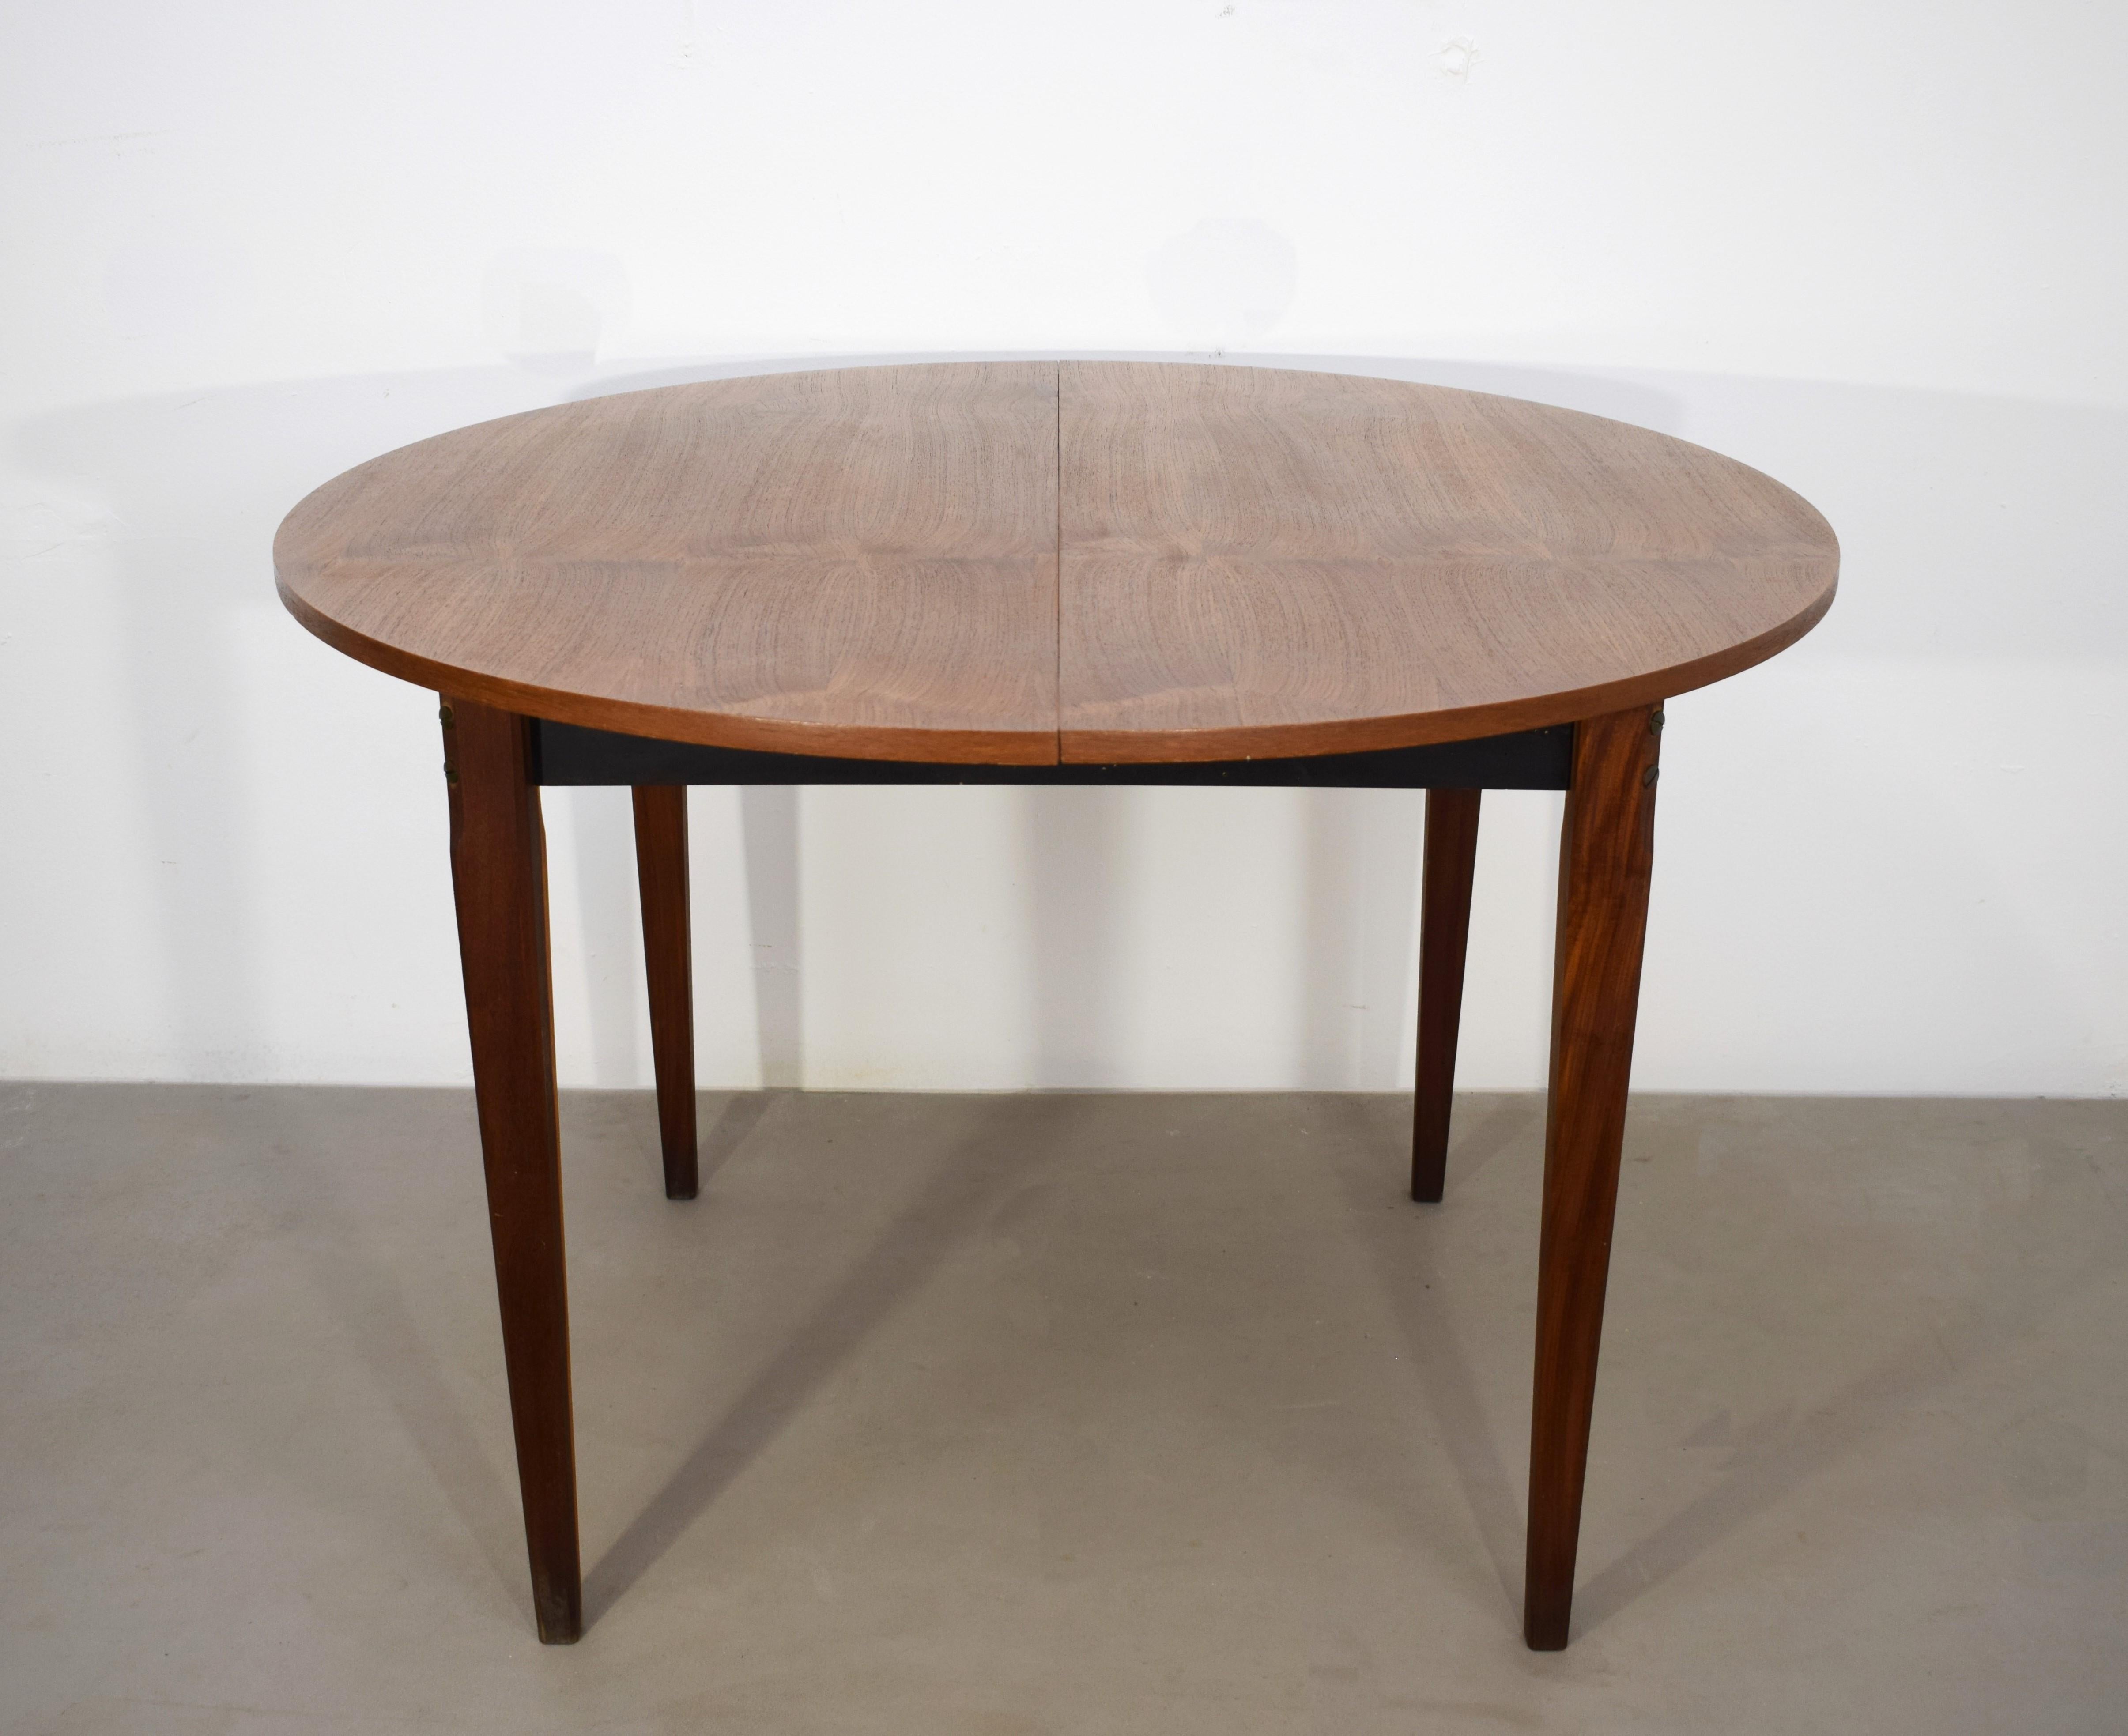 Italian extendable table, 1970s.
Dimensions: 
closed H= 78 cm; D= 118 cm; 
Open H= 78 cm; W= 158 cm; D= 118 cm.